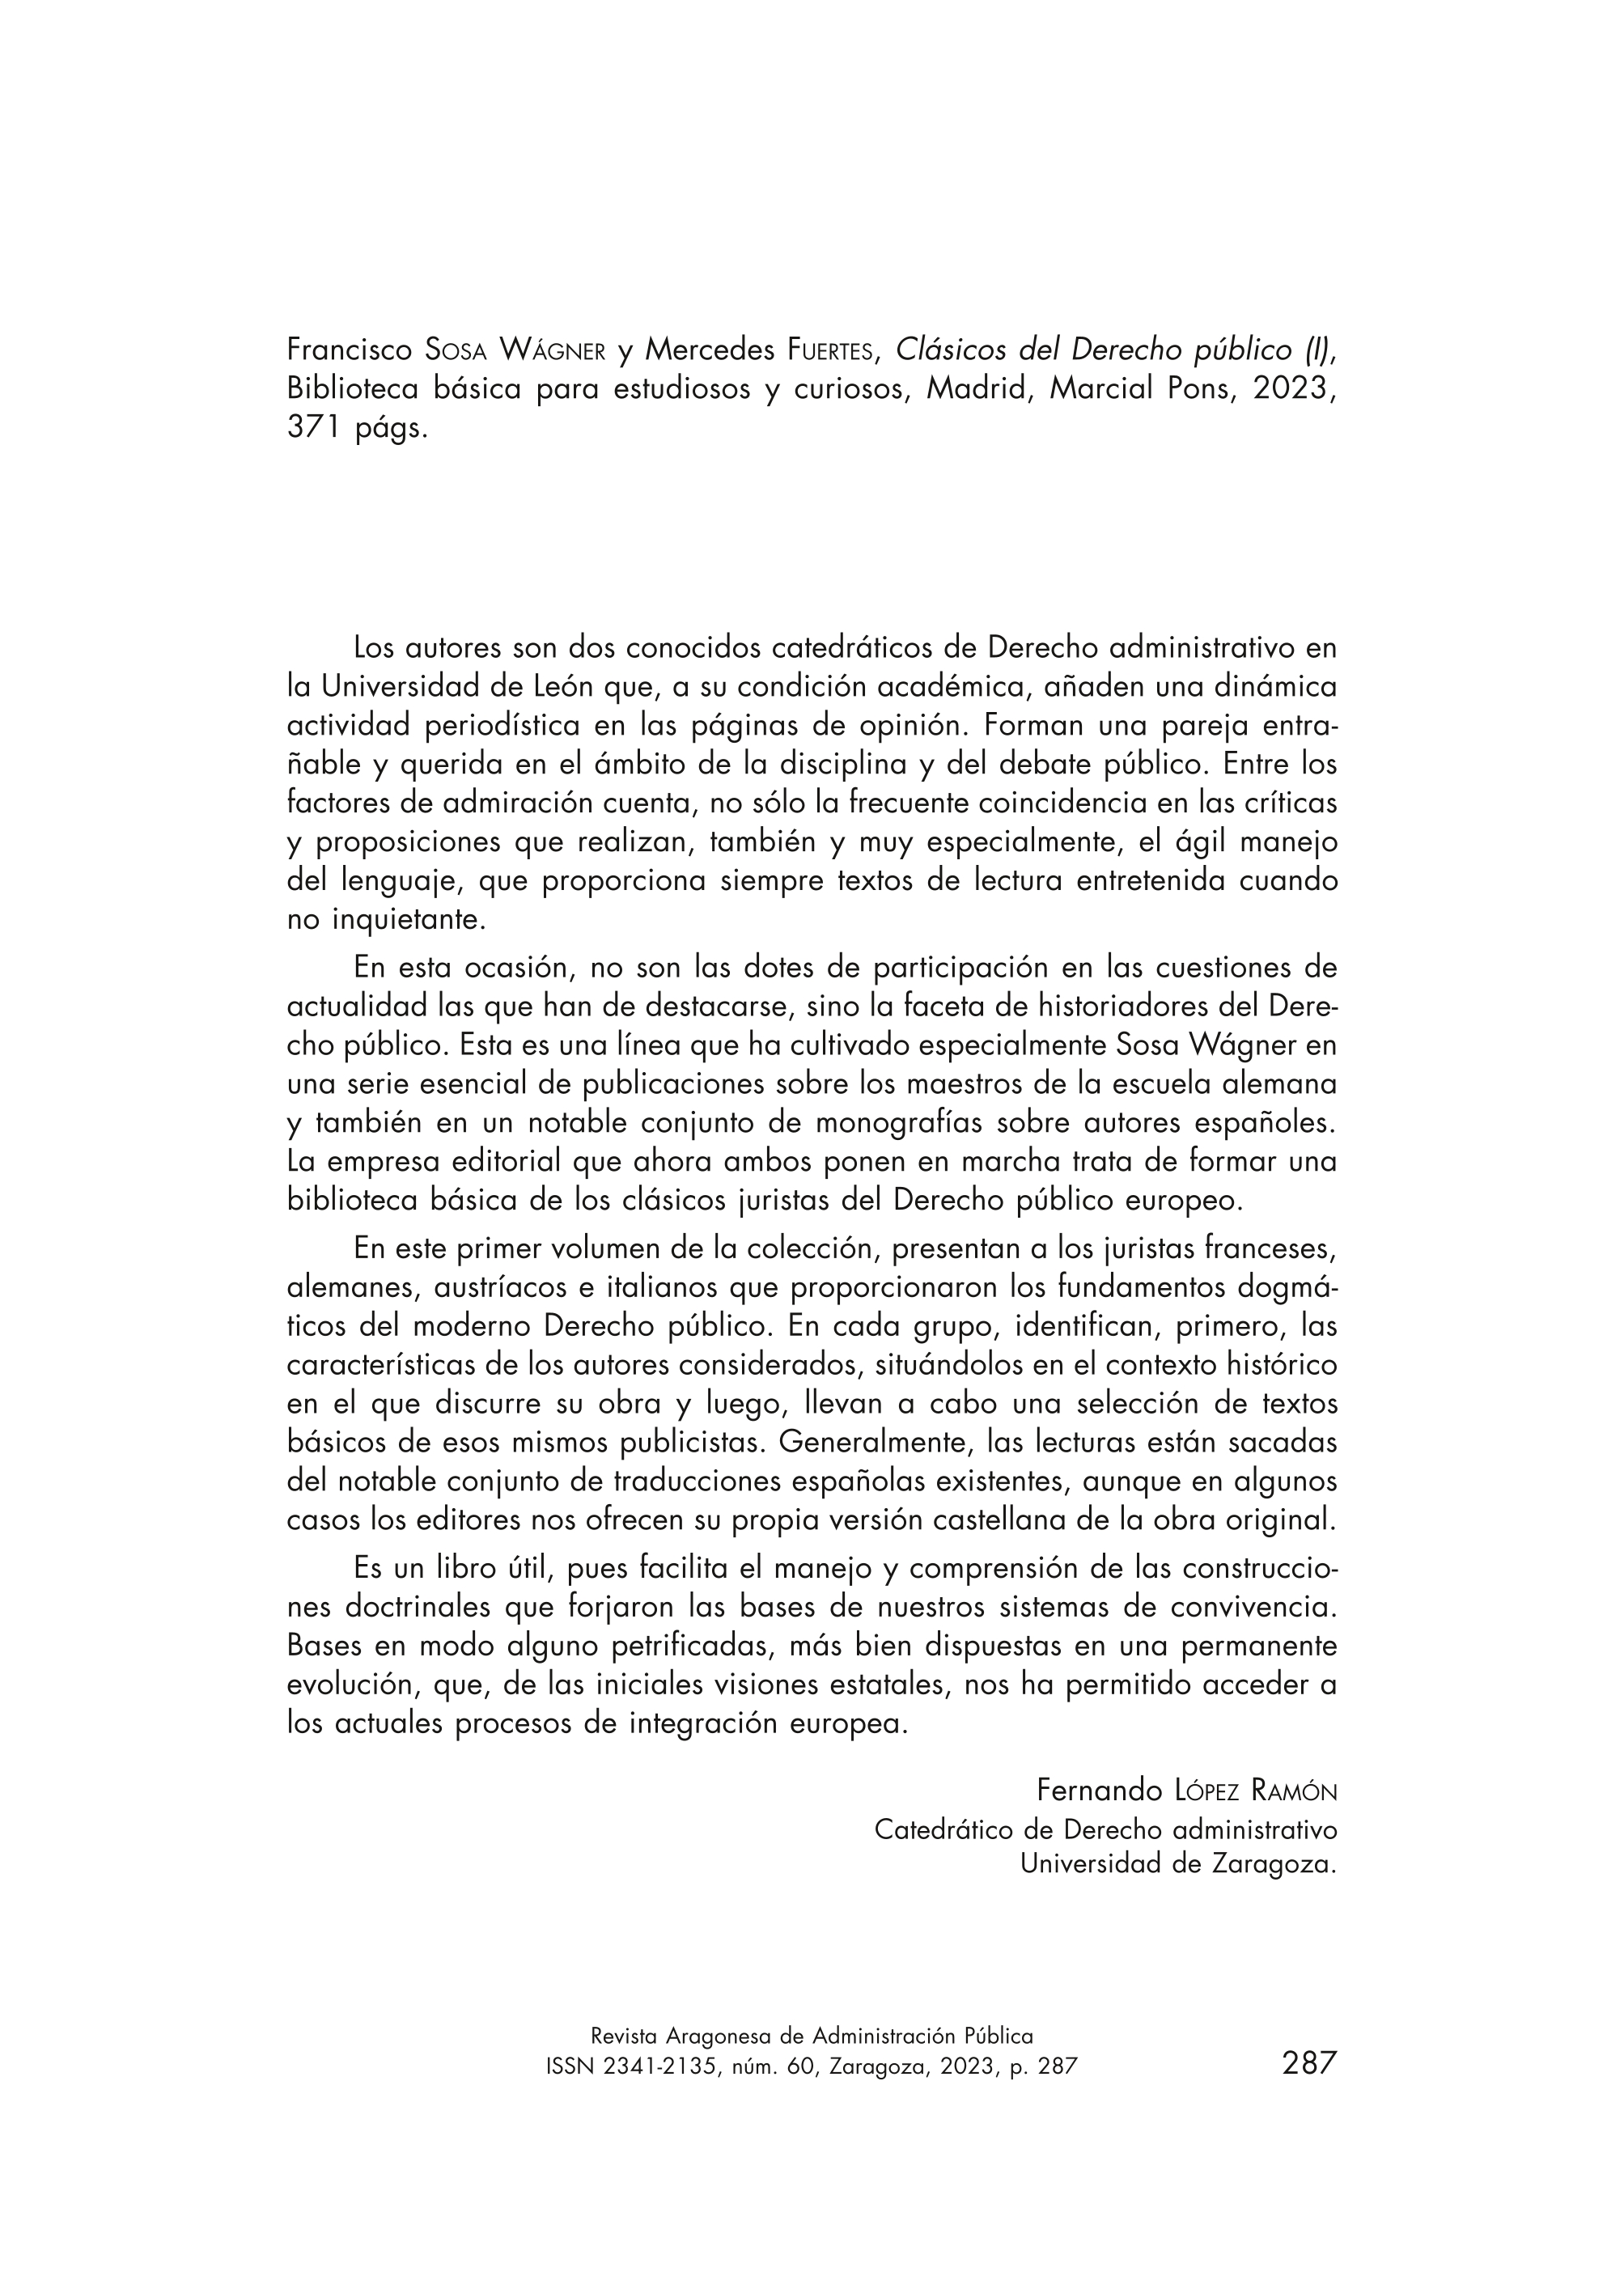 Francisco Sosa Wágner y Mercedes Fuertes, Clásicos del Derecho público (I), Biblioteca básica para estudiosos y curiosos, Madrid, Marcial Pons, 2023, 371 págs.